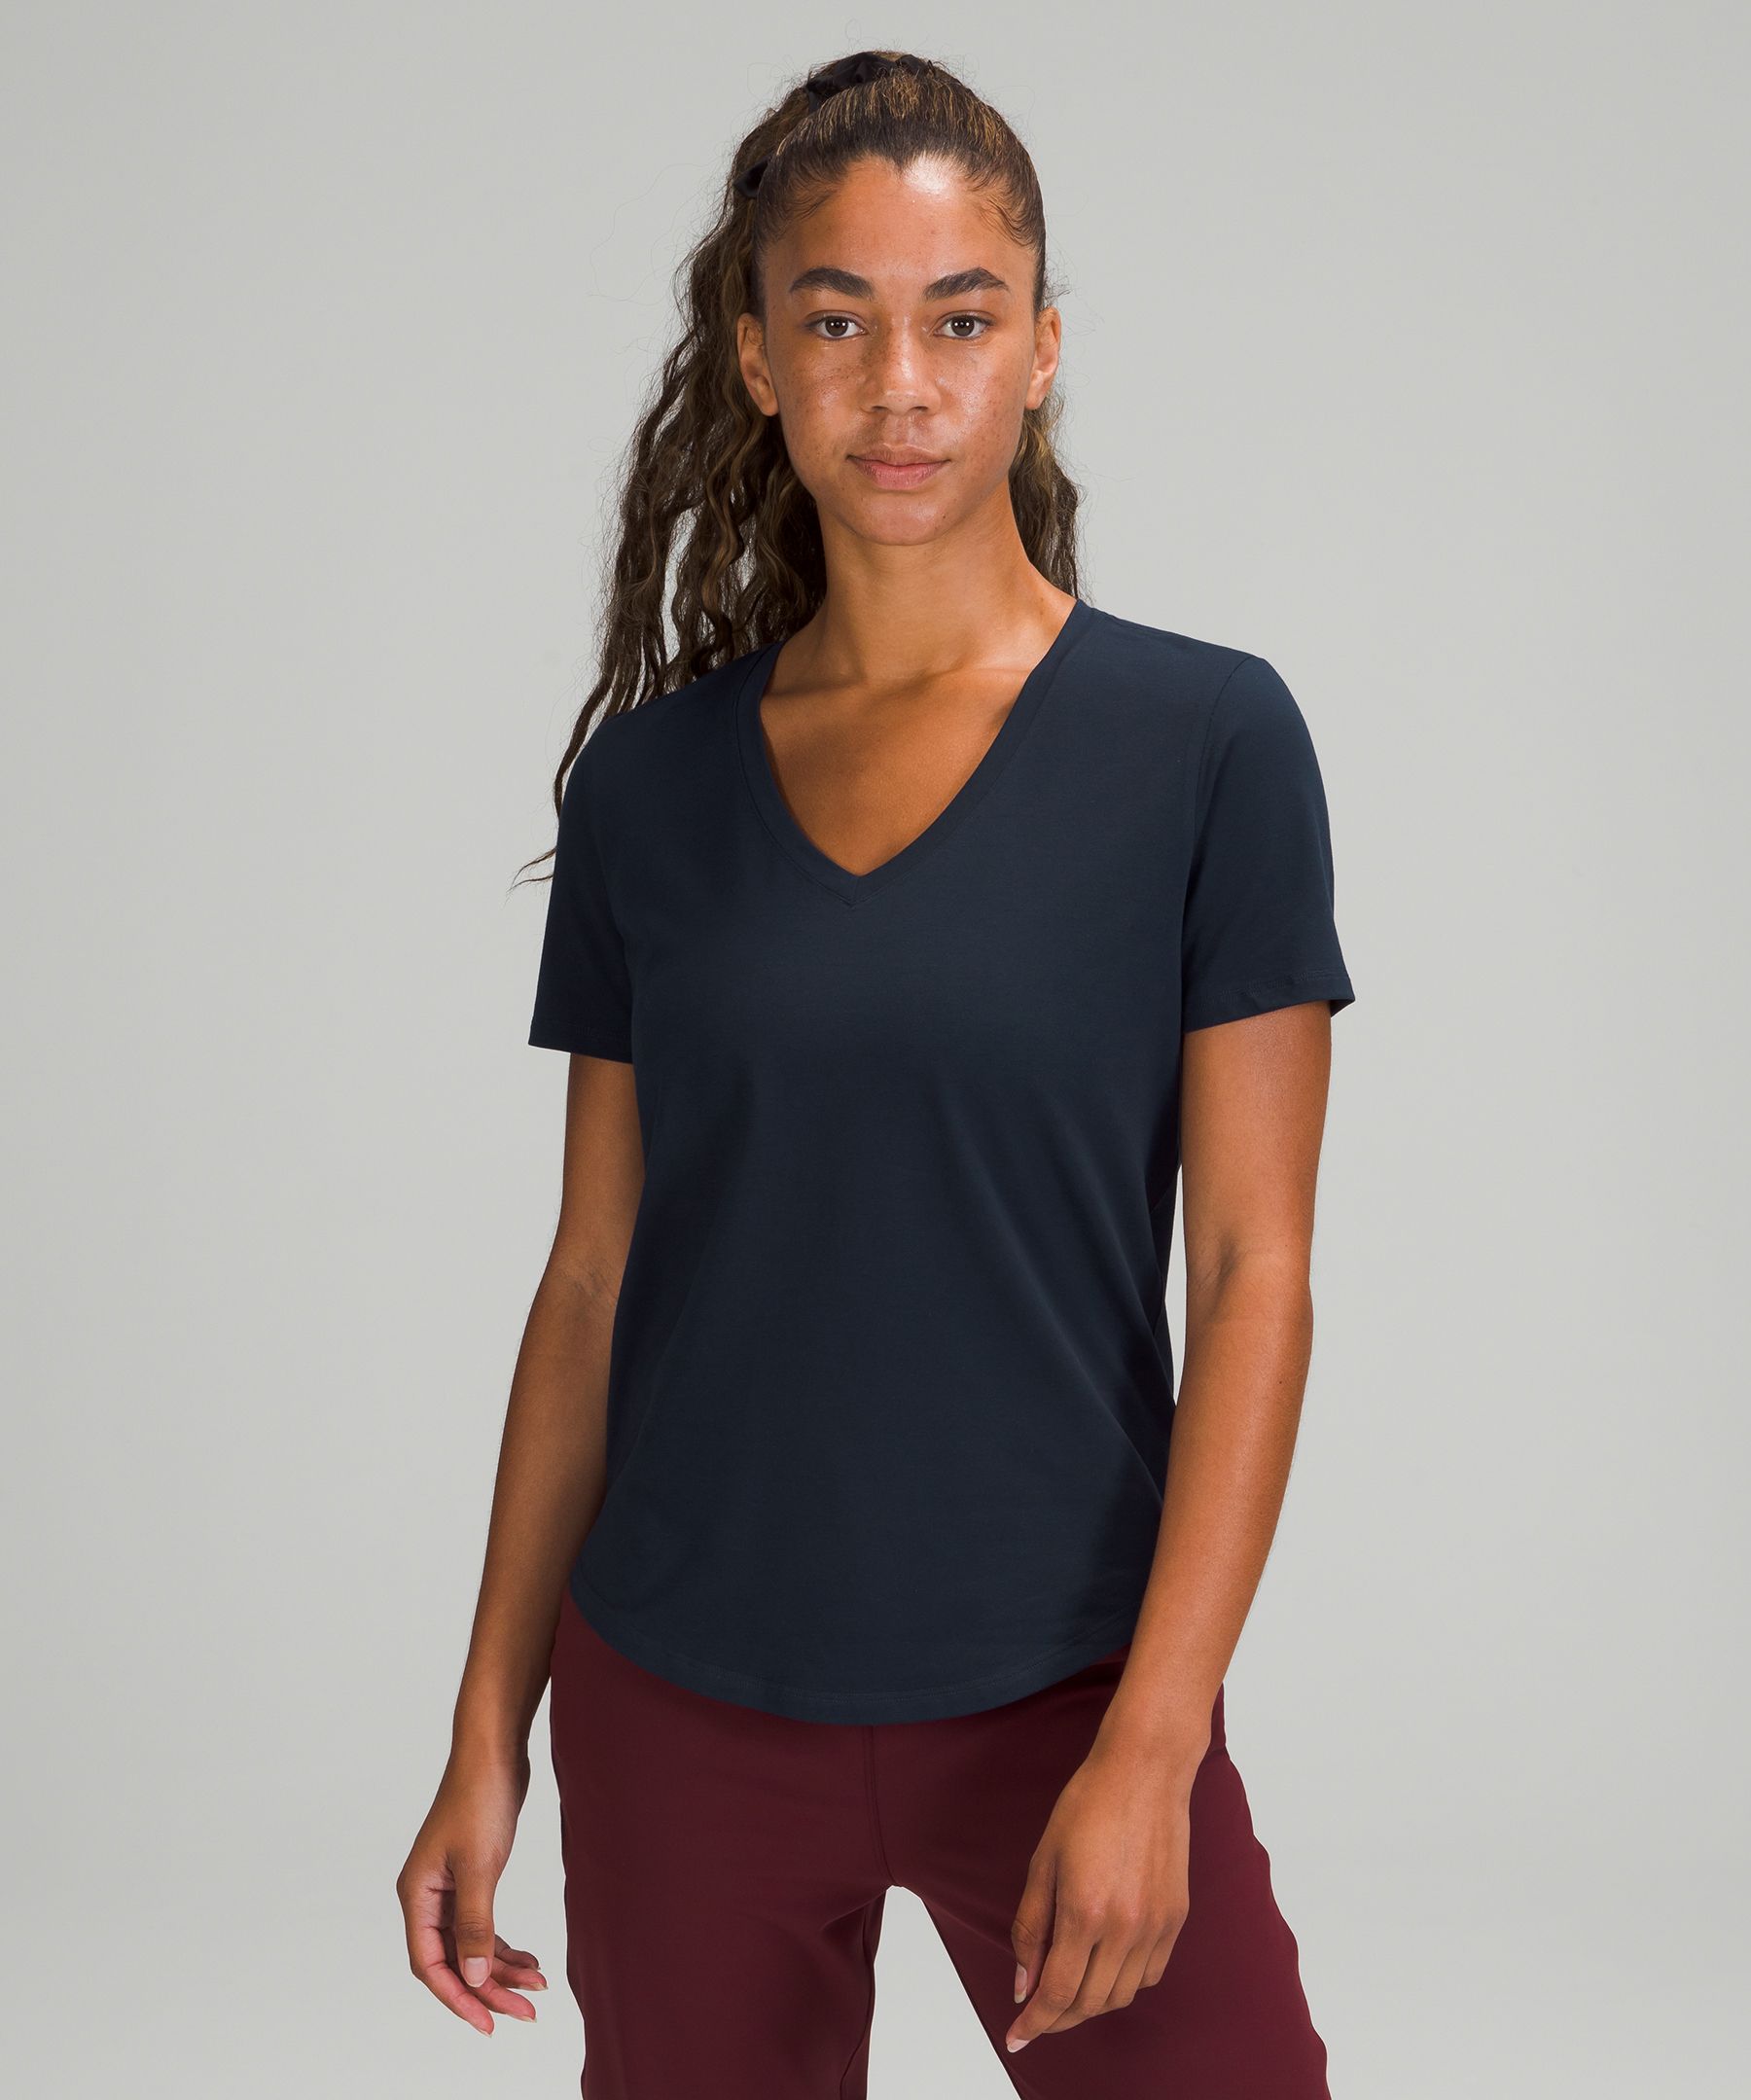 Lululemon Love Tee Short Sleeve V-Neck T-Shirt Rainforest Green Size 12/14  - $10 - From Olga